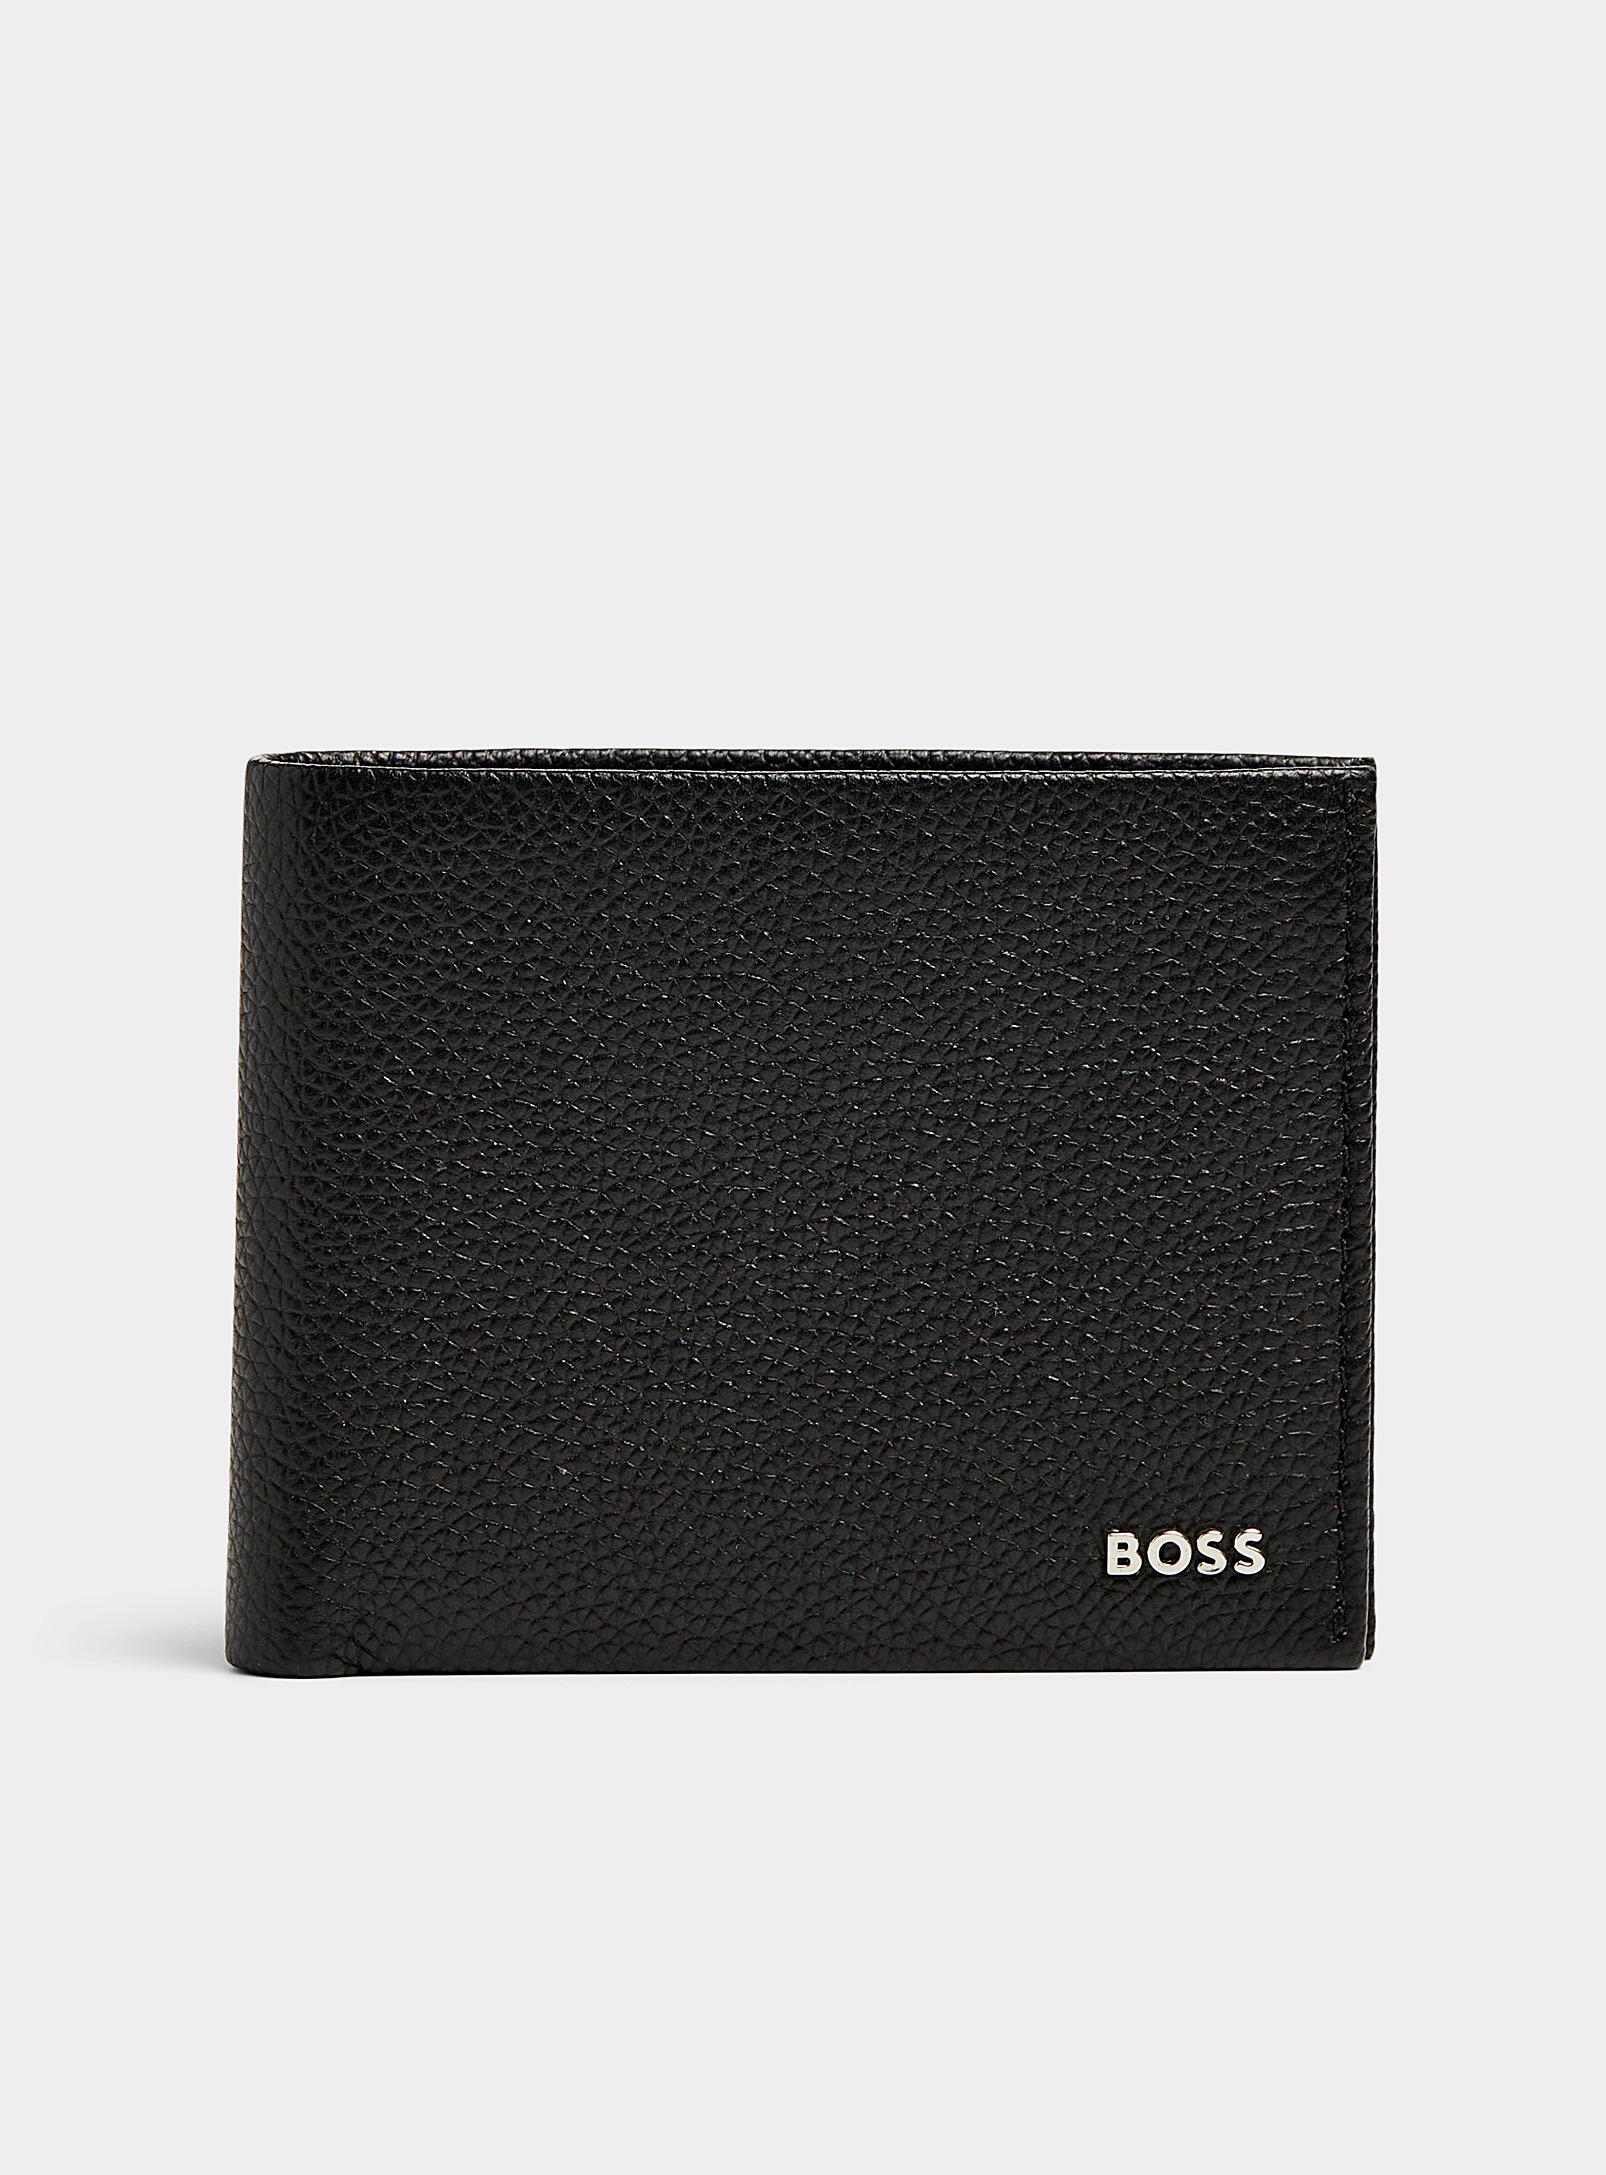 BOSS - Le portefeuille cuir grenu logo argent